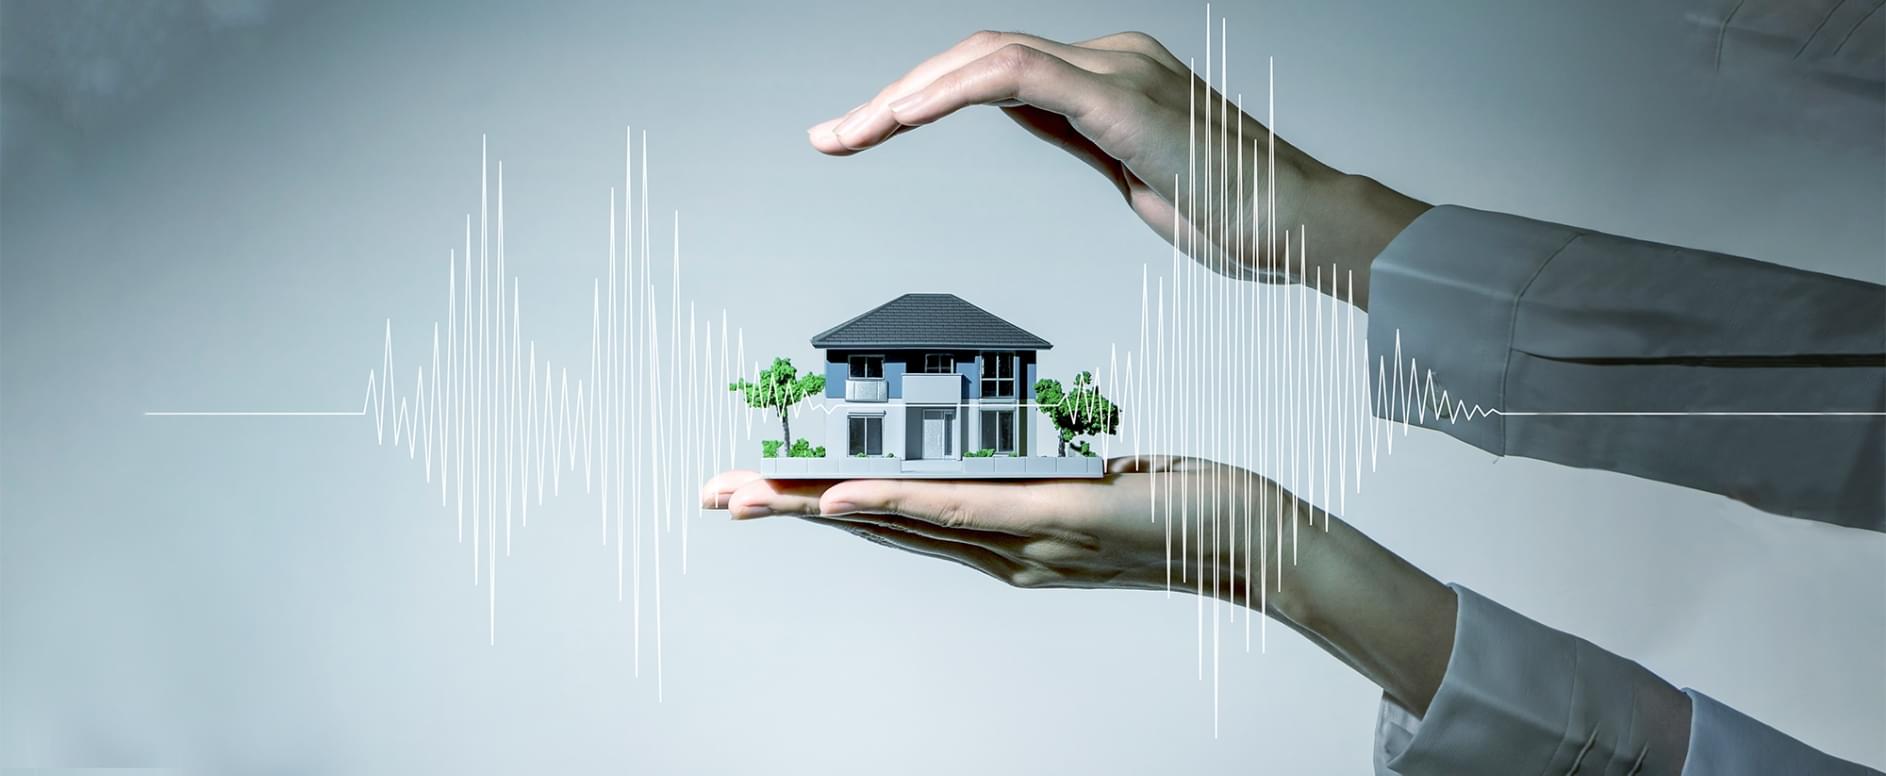 地震に強い設計の住宅模型